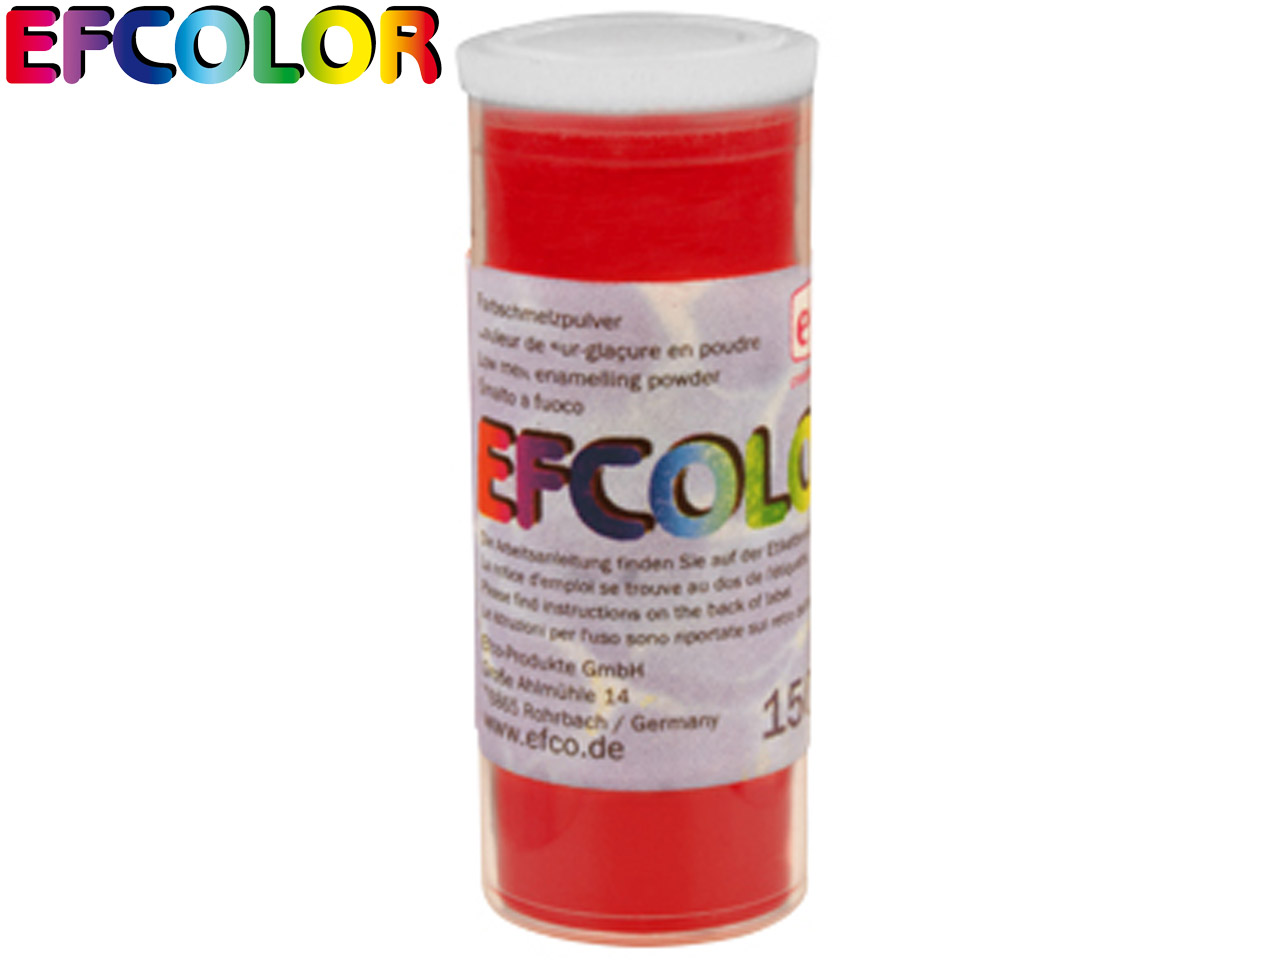 Efcolor Enamel Red 10ml - Standard Image - 2